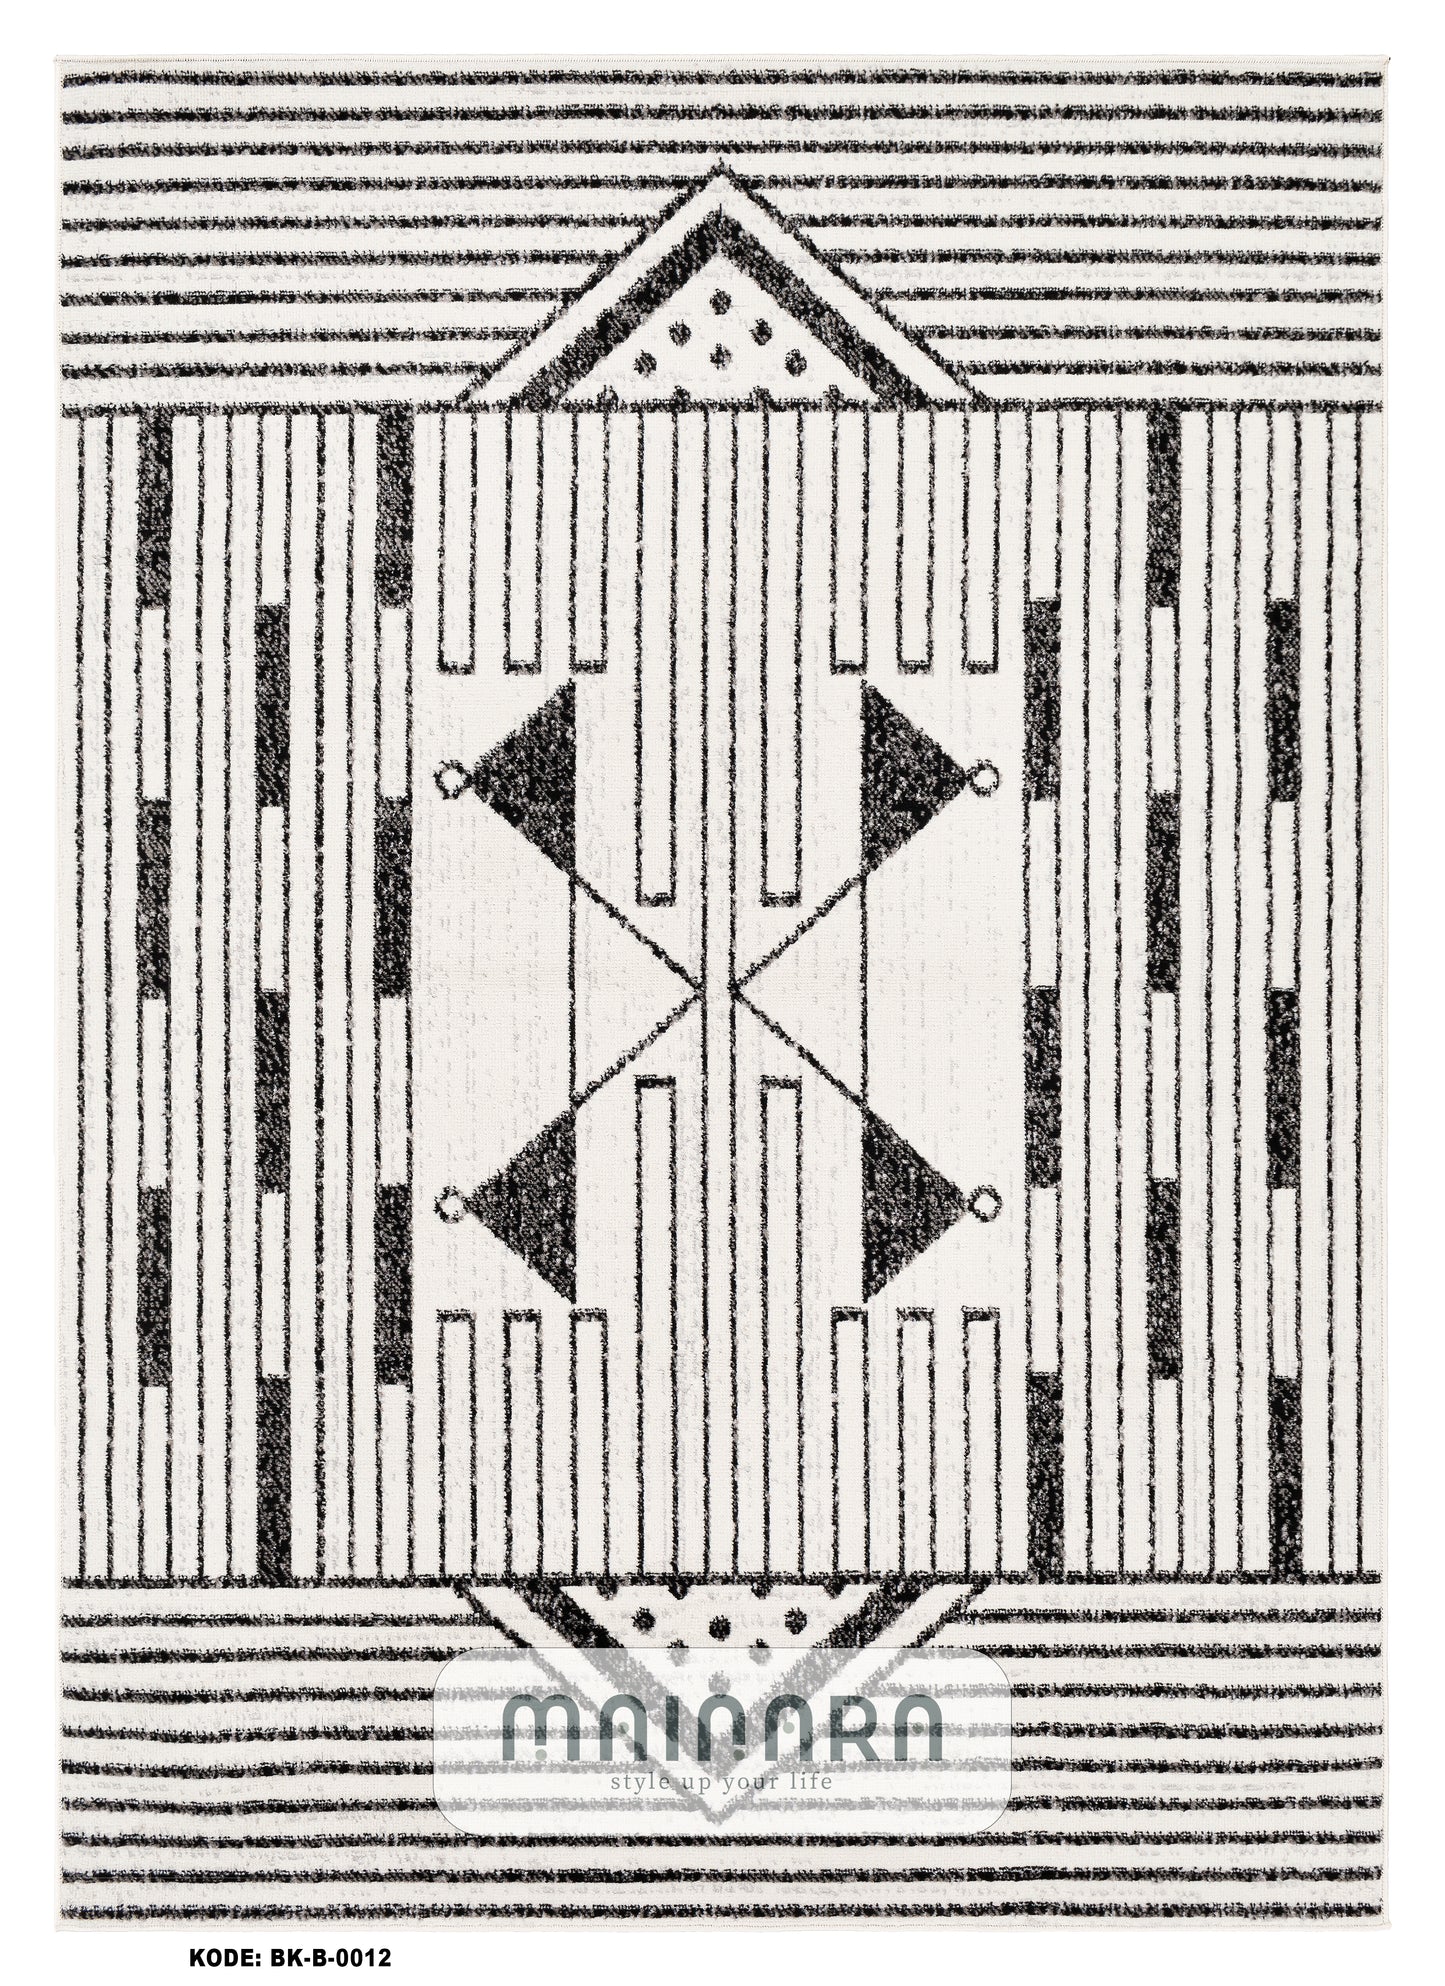 Karpet Bohemian (BK-B-0012) - Black,White